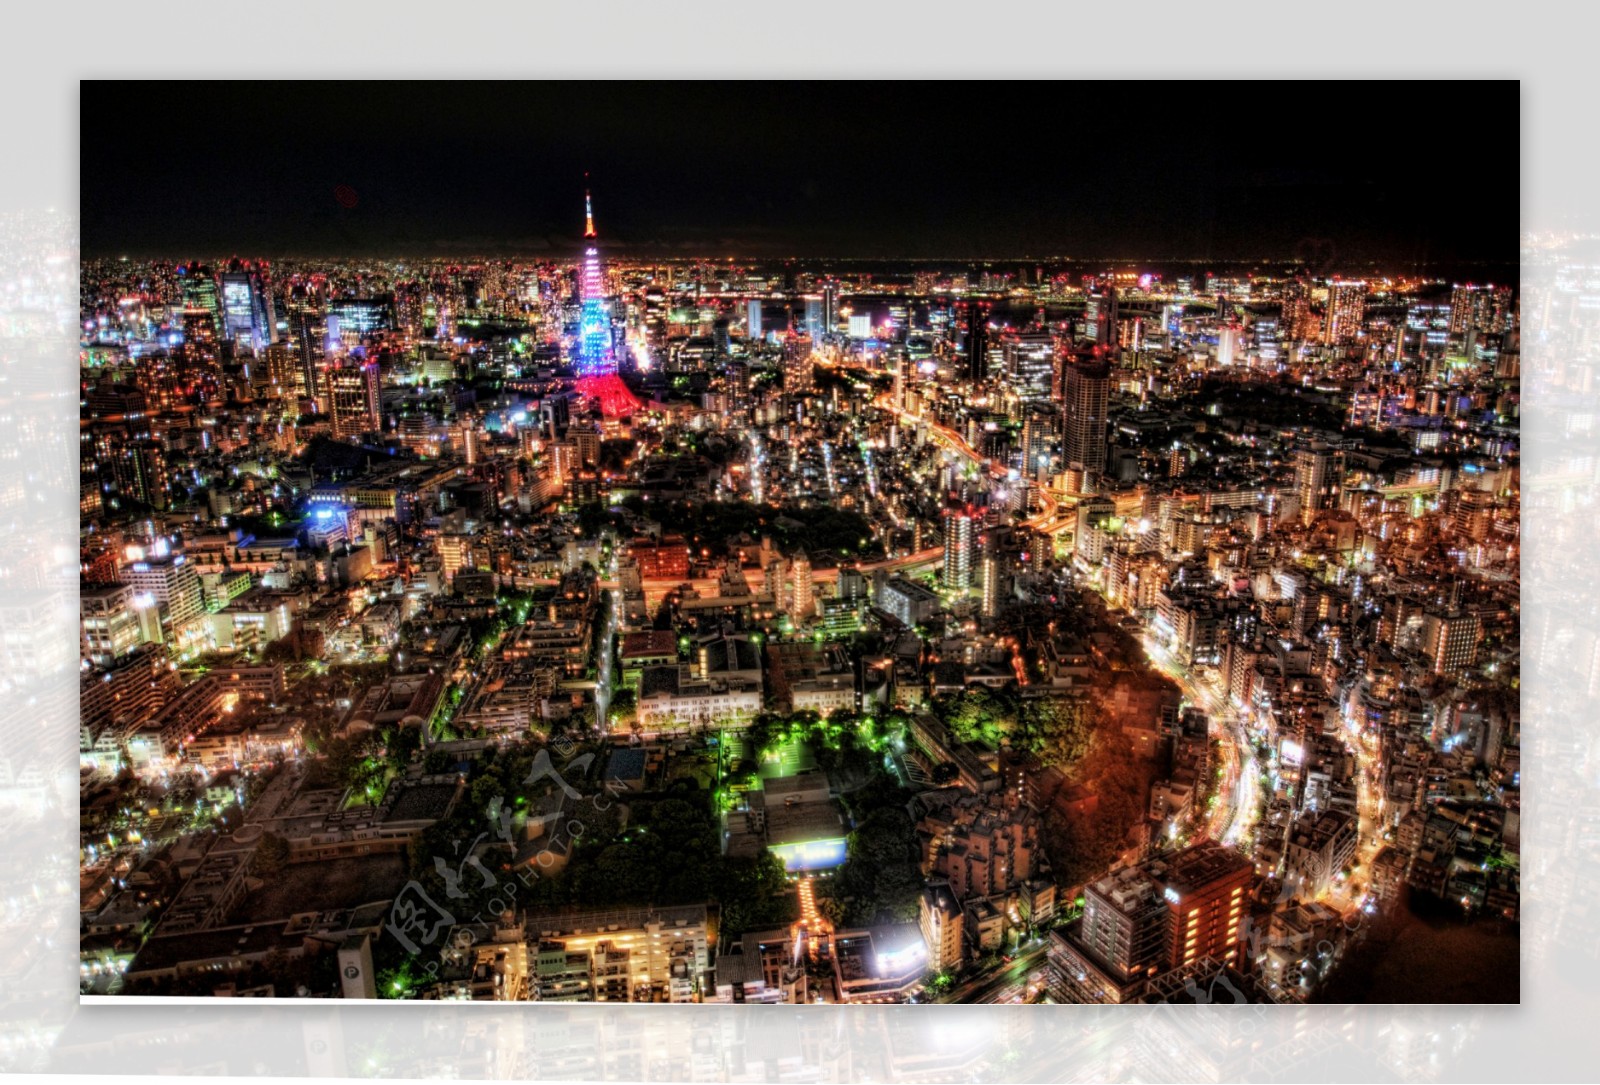 东京夜生活图片